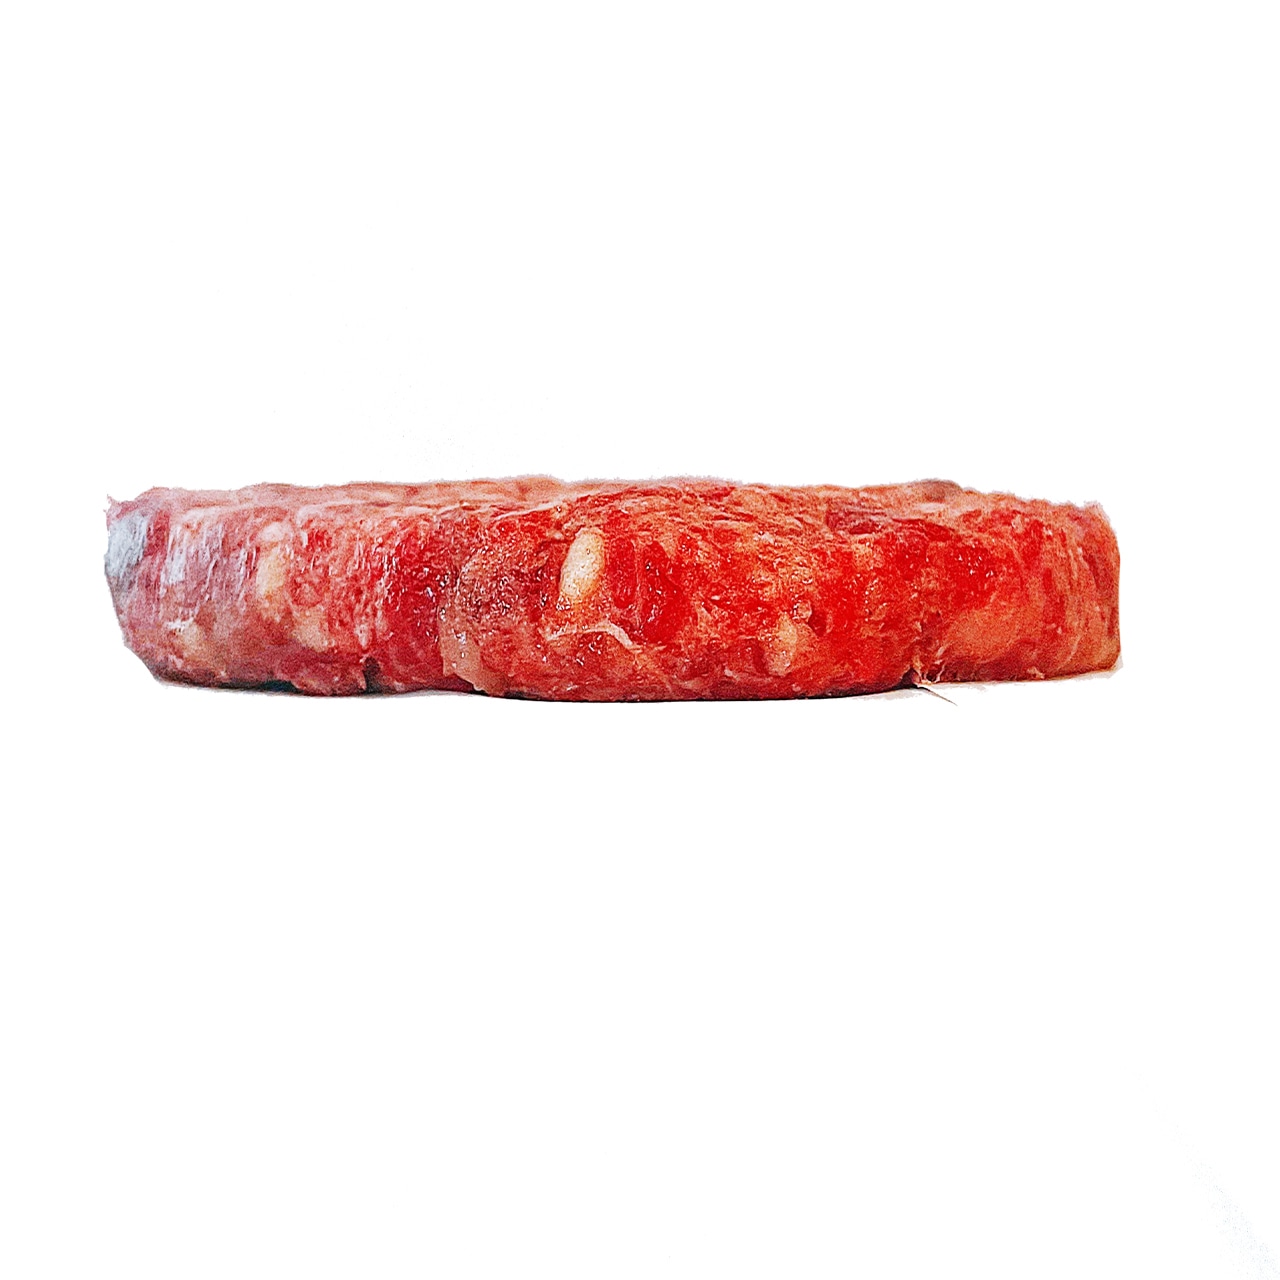 お家で焼ける至極のハンバーガーパティ「但馬牛ハサムンオリジナルパティ」125g×5枚